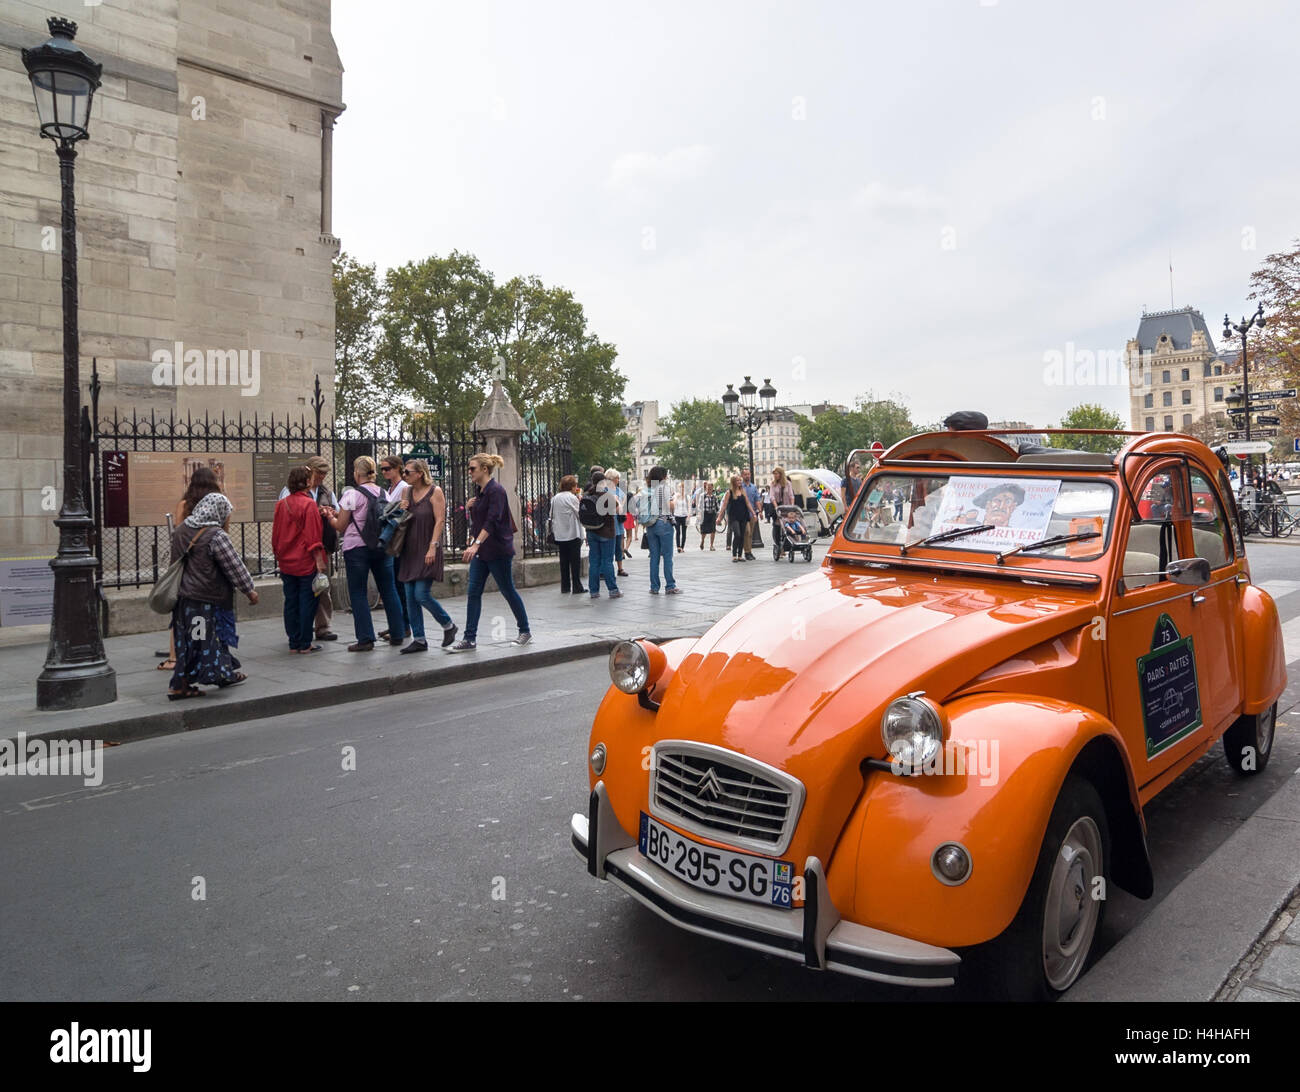 PARIS - SEPT 17, 2014: Old Citroen 2CV parked at cathedral Notre-Dame de Paris, Paris, France. Stock Photo